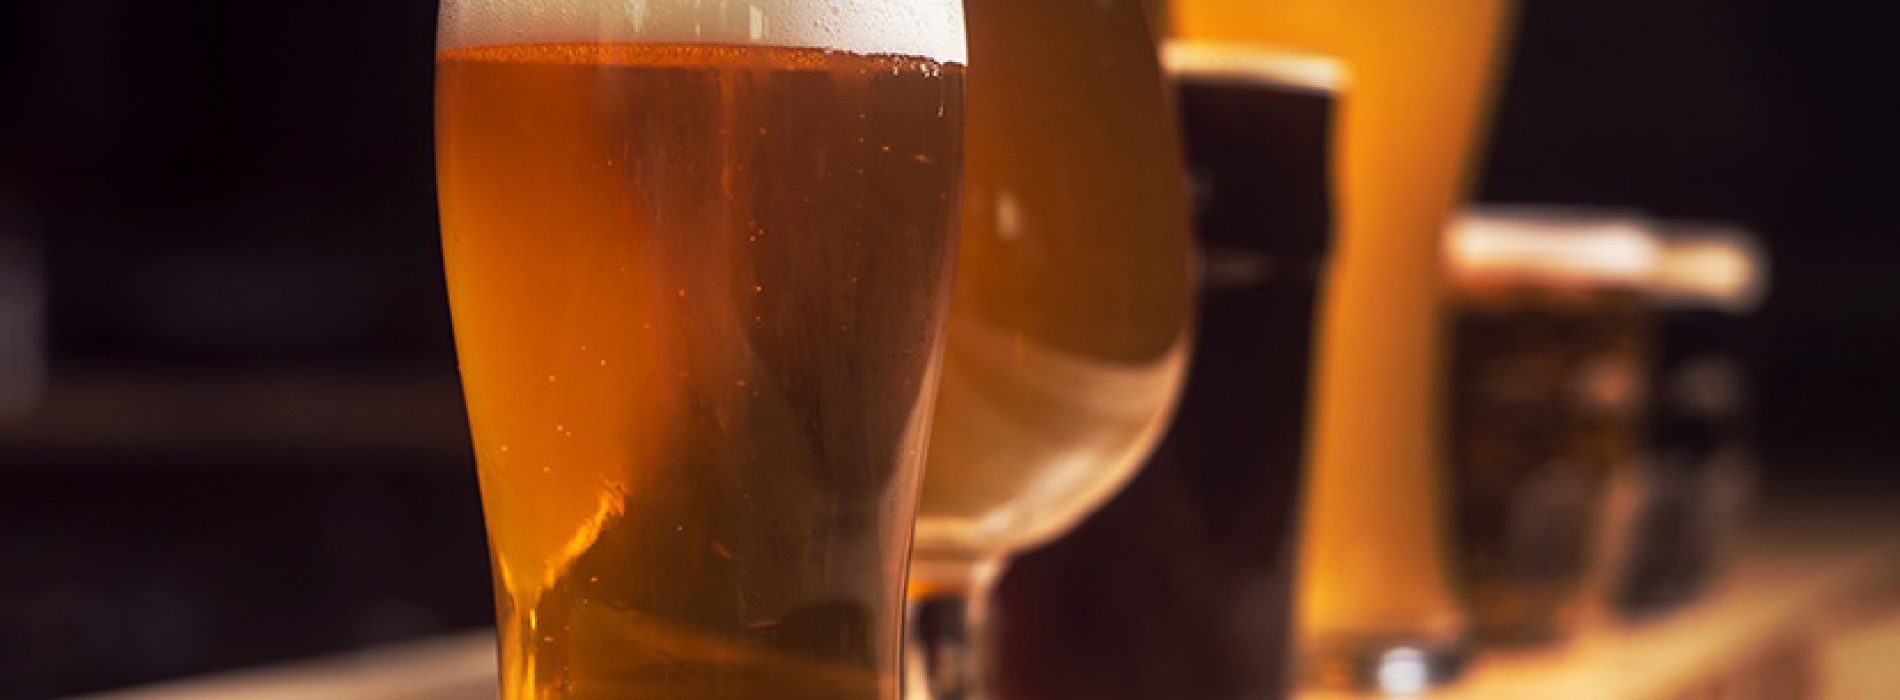 Jakie szklanki nadają się do piwa?